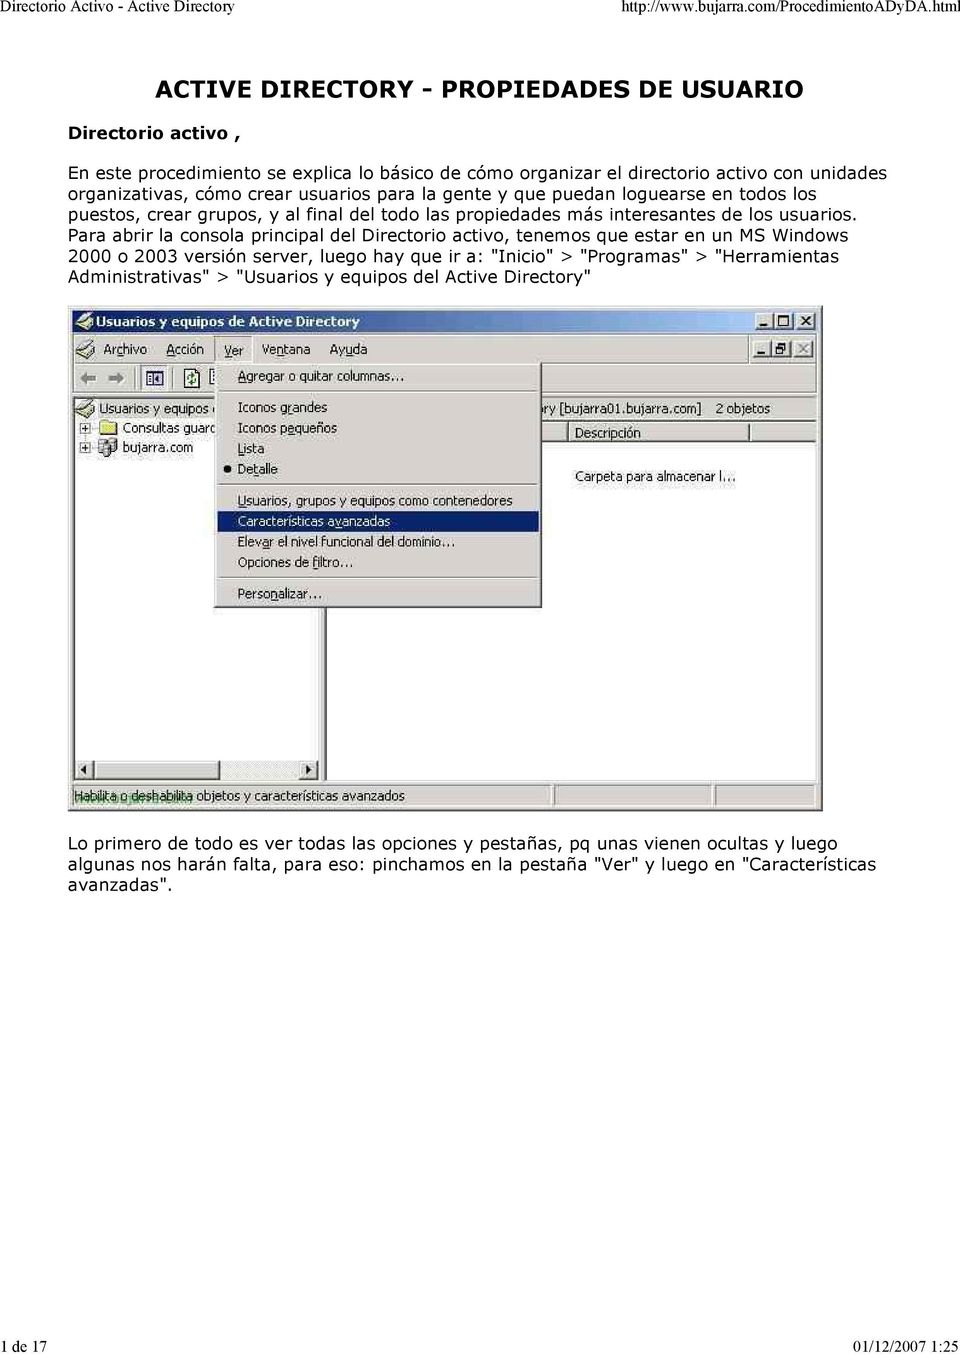 Para abrir la consola principal del Directorio activo, tenemos que estar en un MS Windows 2000 o 2003 versión server, luego hay que ir a: "Inicio" > "Programas" > "Herramientas Administrativas" >